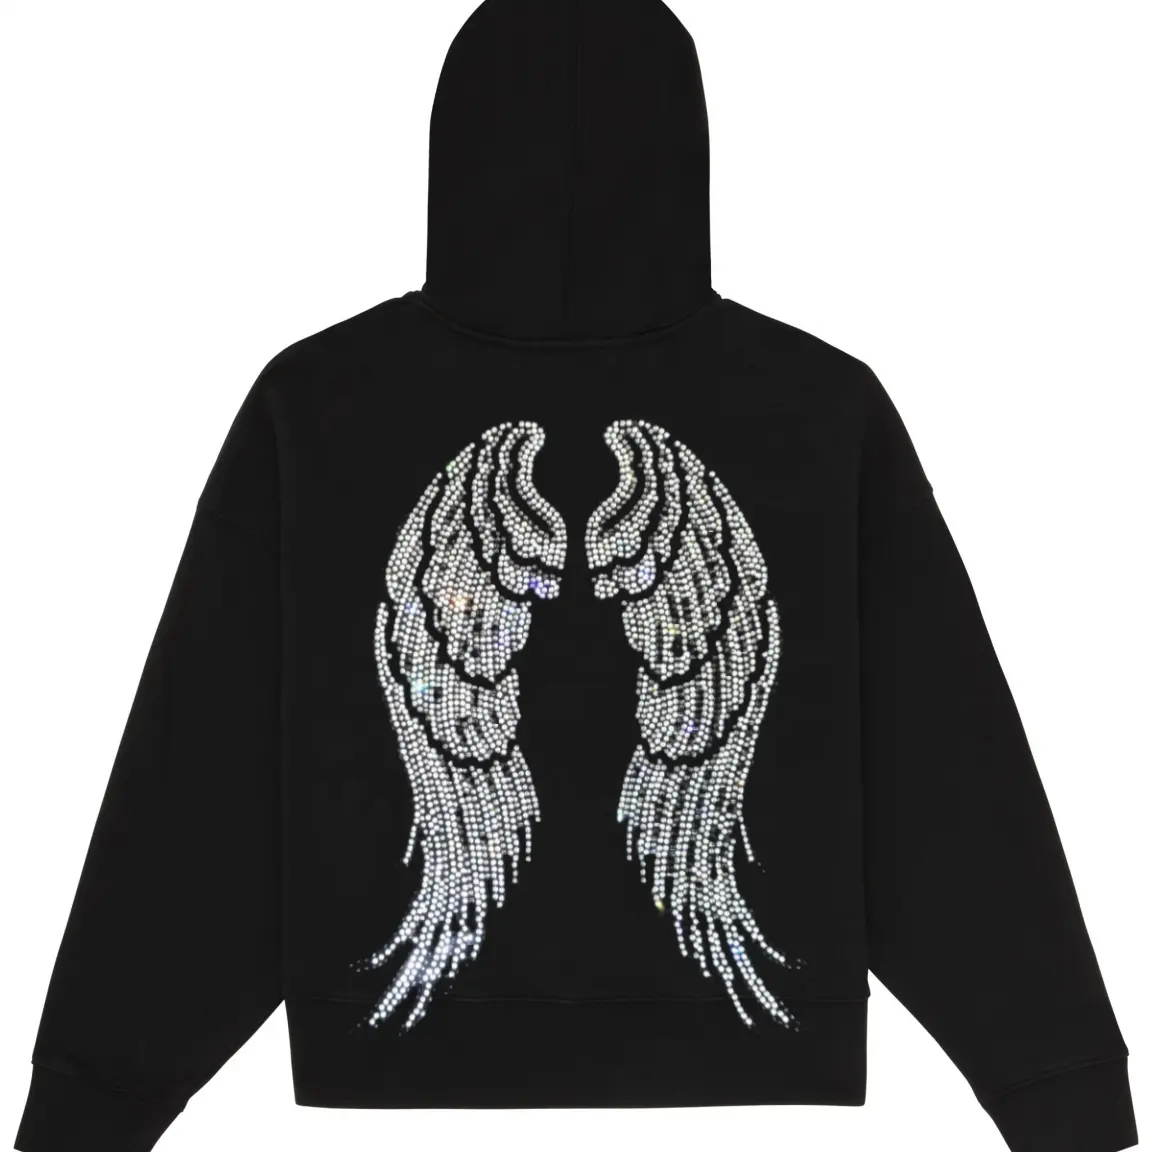 Hot sales sparkling angel wing rhinestone design rhinestone motif custom rhinestone transfer for clothes